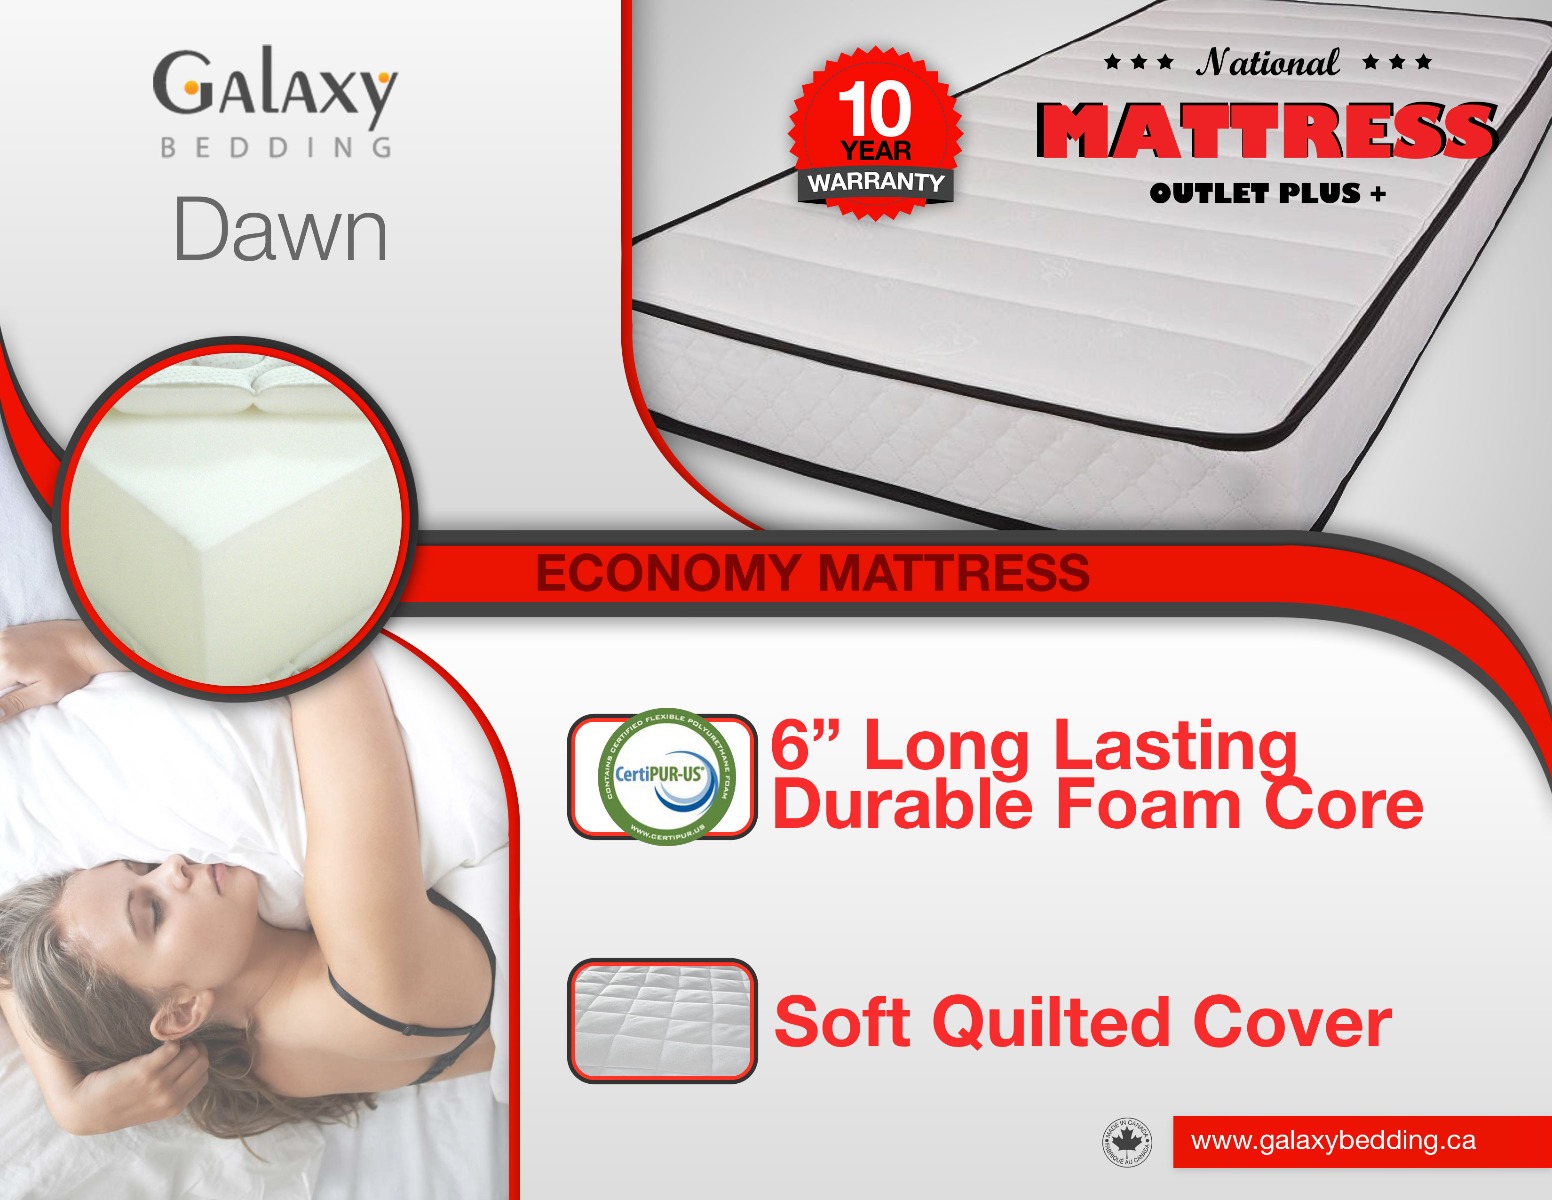 Galaxy Dawn Foam Mattress Spec